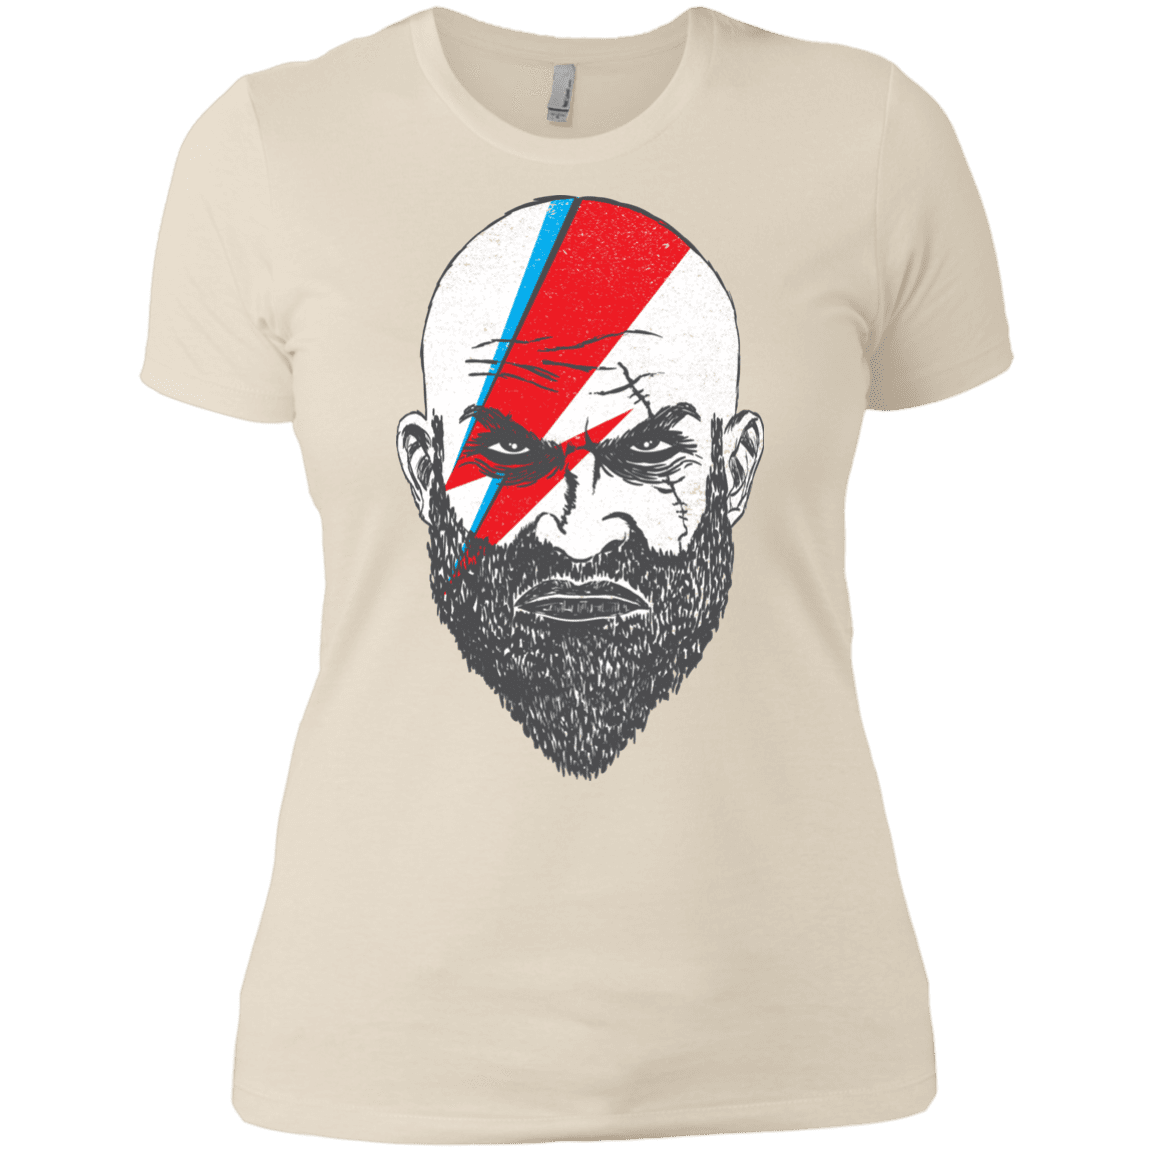 T-Shirts Ivory/ / X-Small Ziggy Kratos Women's Premium T-Shirt